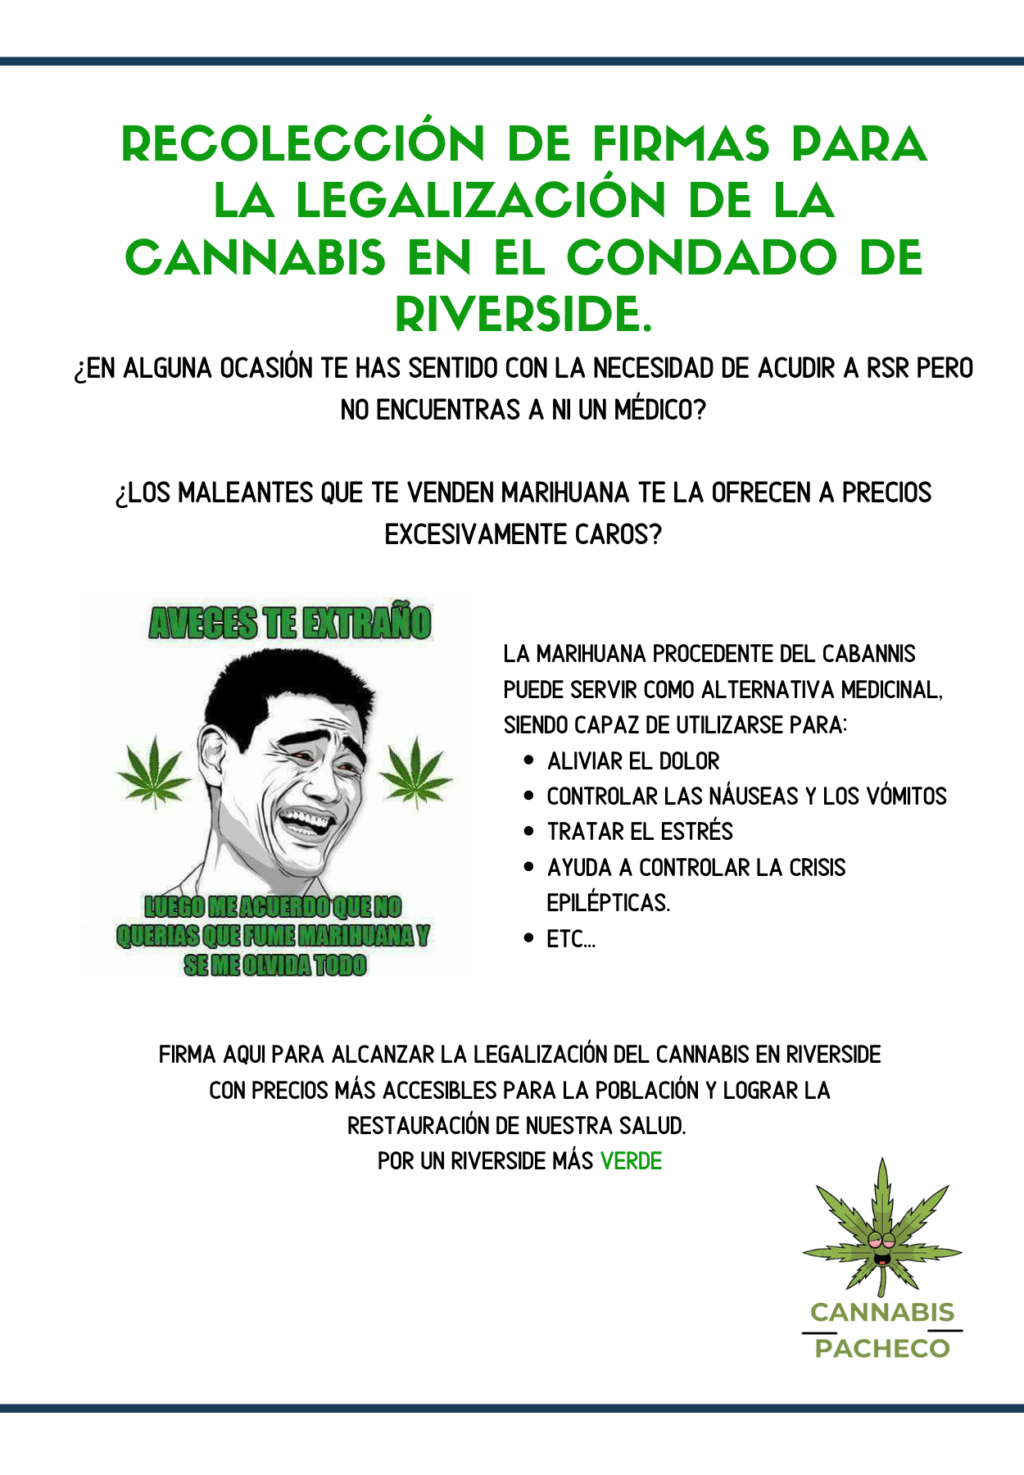 [Recolección de firmas] Cannabis Poster10